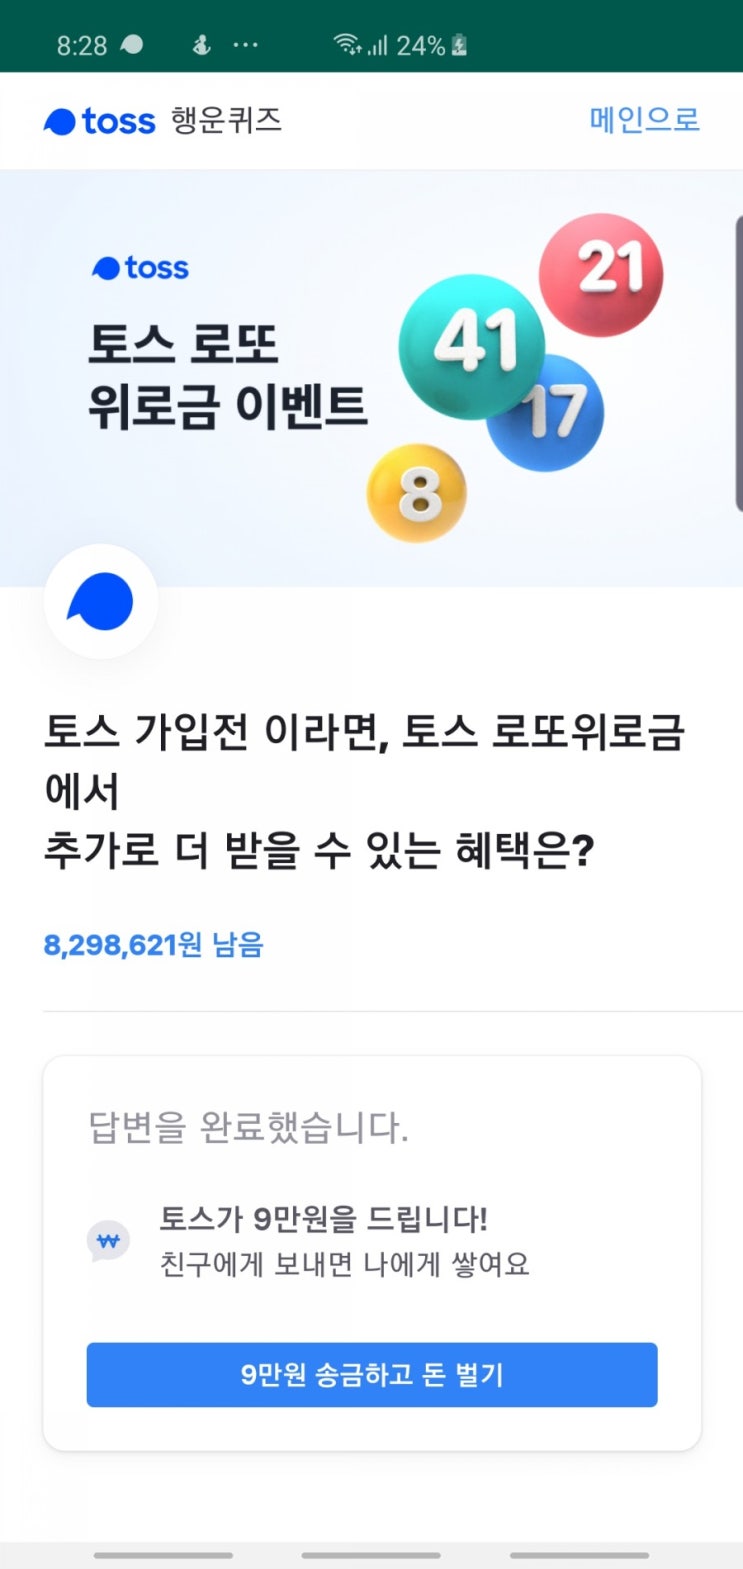 토스 로또위로금 토스행운퀴즈 정답 공개(실시간)